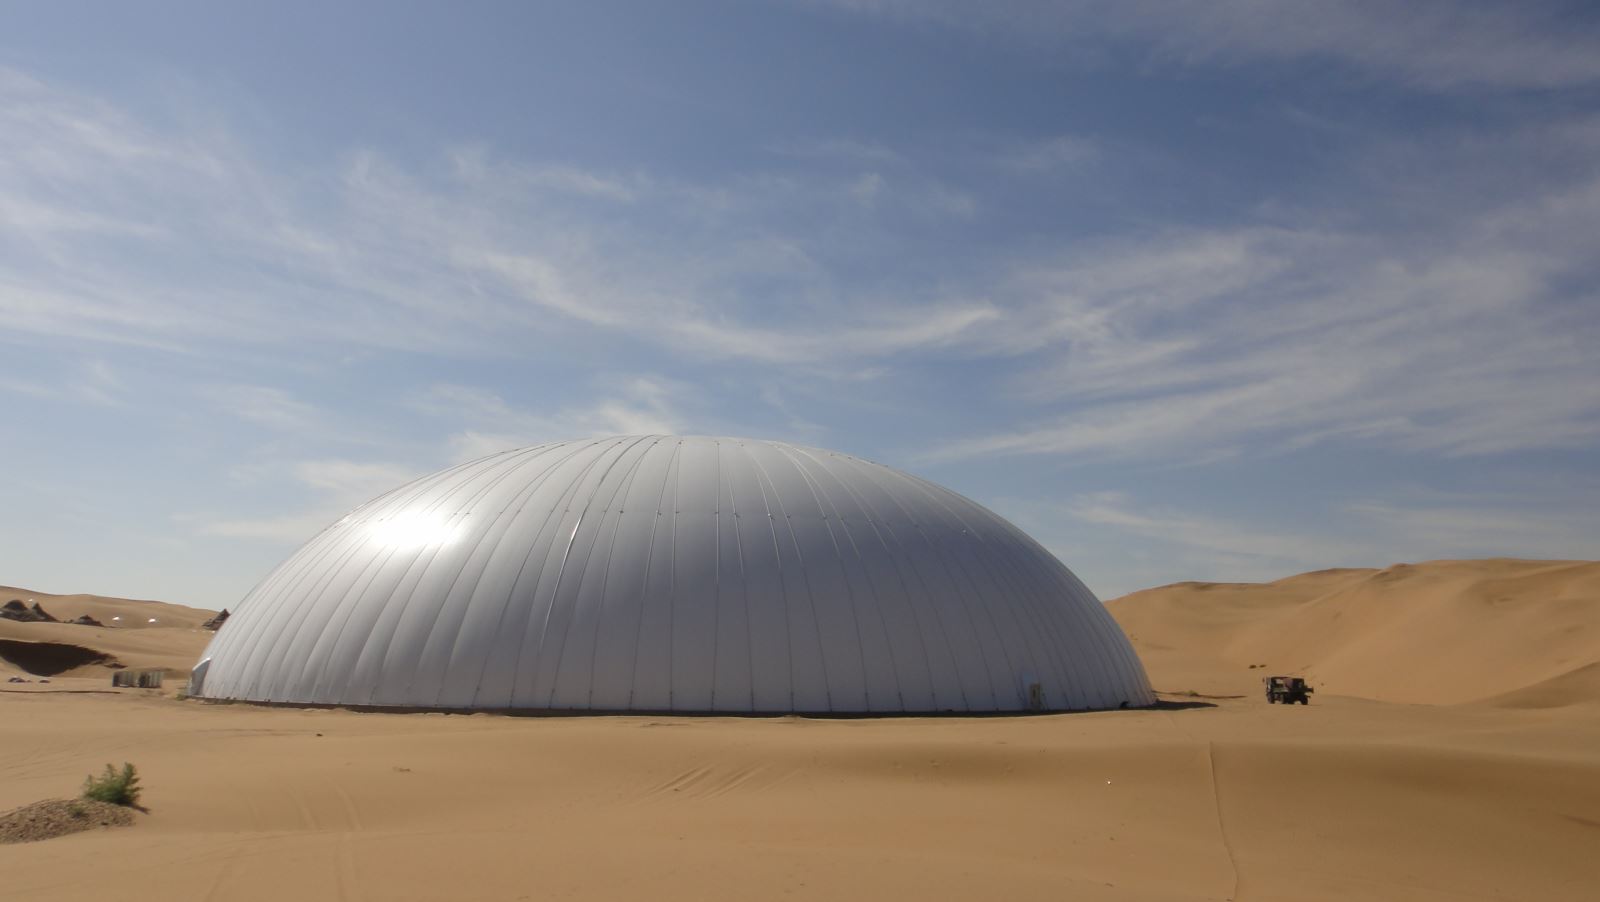 内蒙古响沙湾沙漠艺术馆